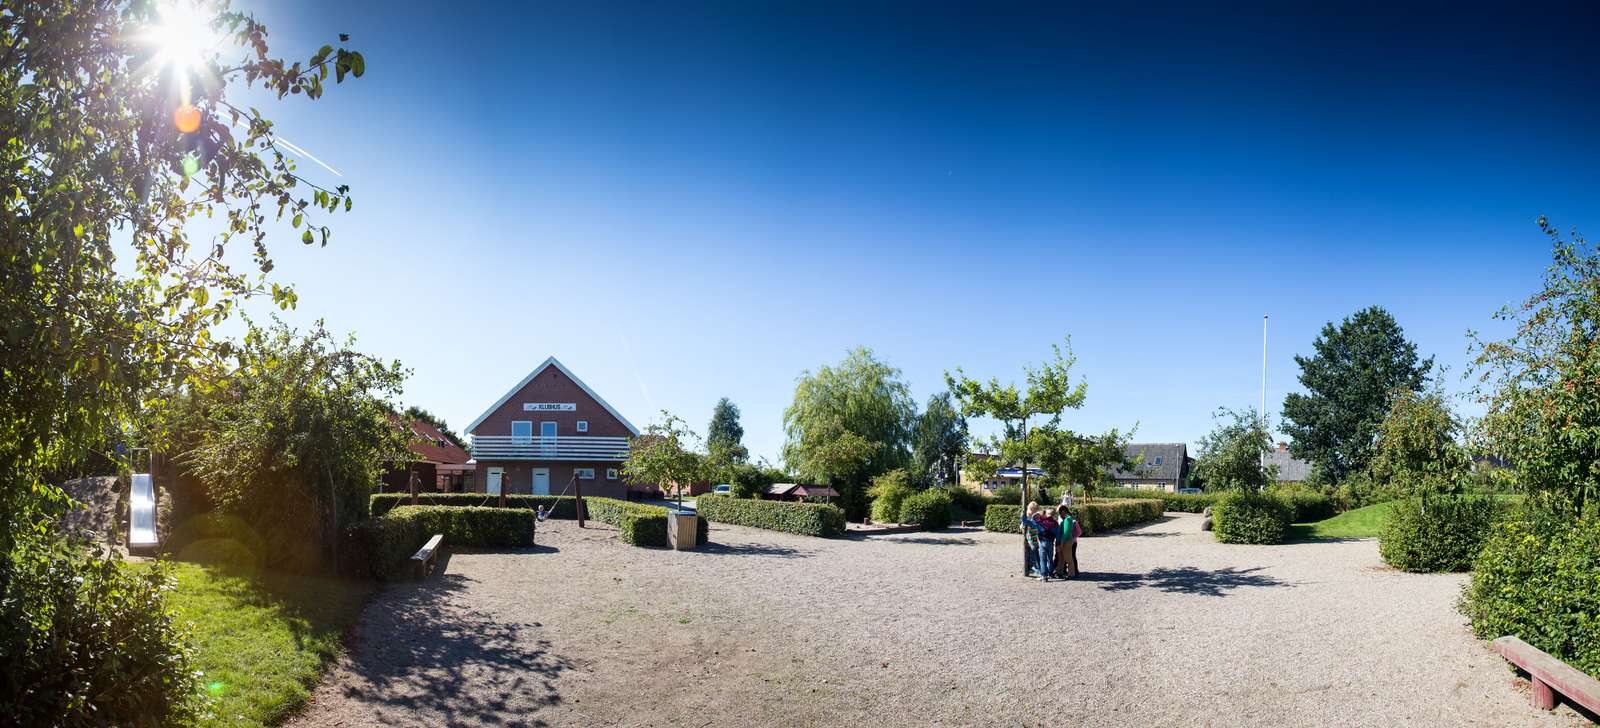 Legepladser i sønderborg kommune Skoletoften Blans panorama2